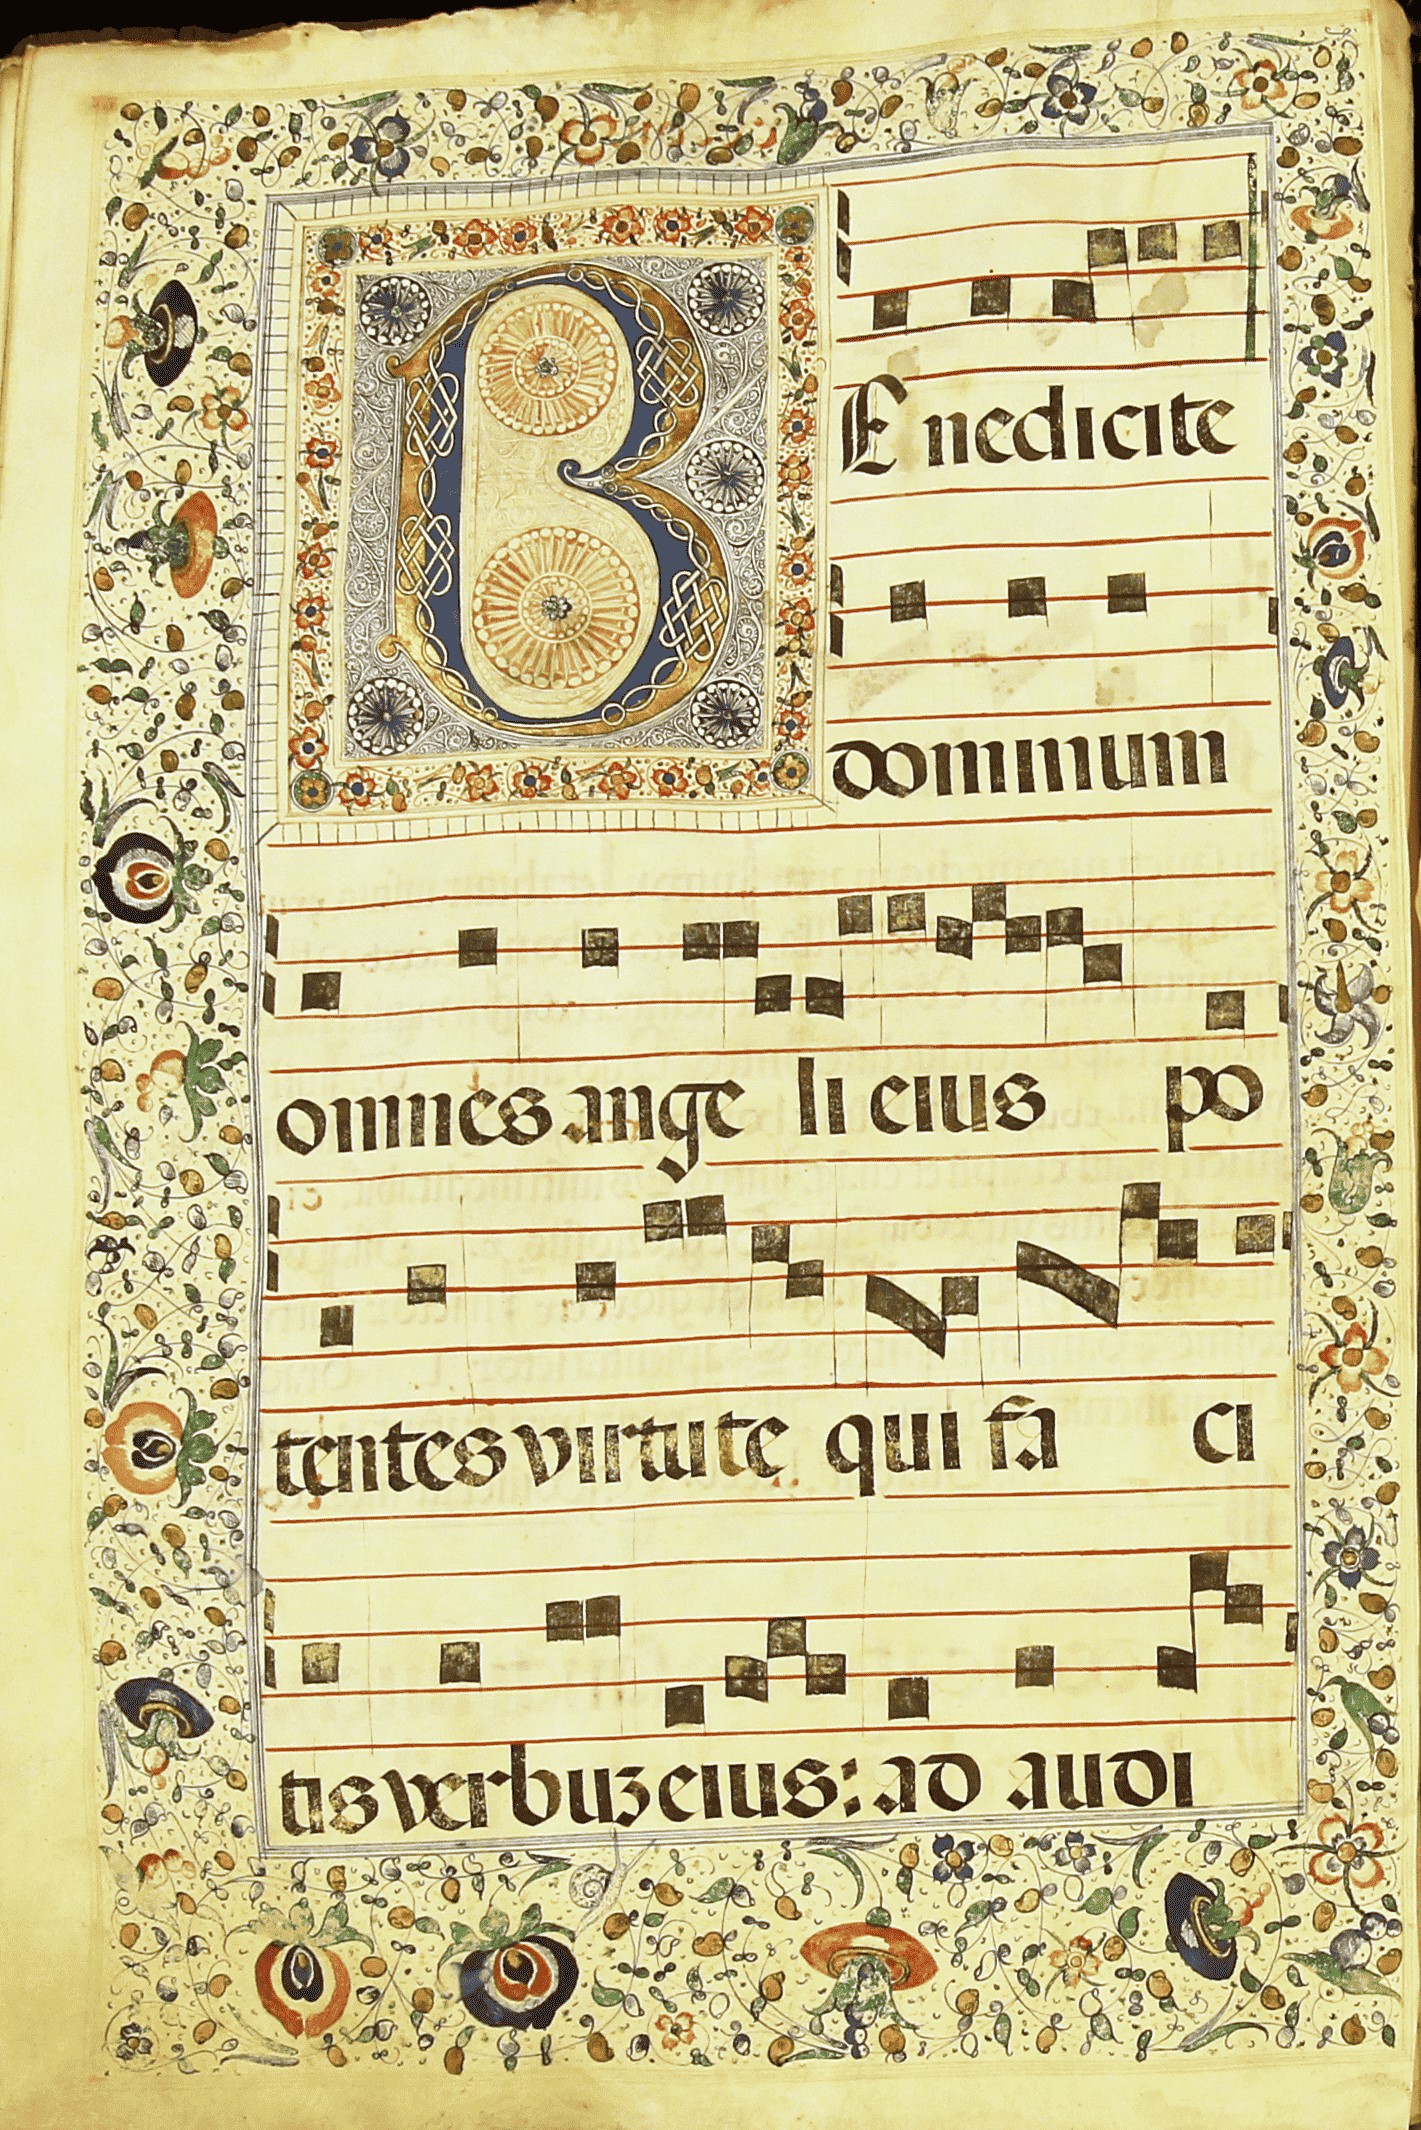 À descoberta do canto gregoriano através dos livros de coro do Mosteiro Santa Maria de Belém